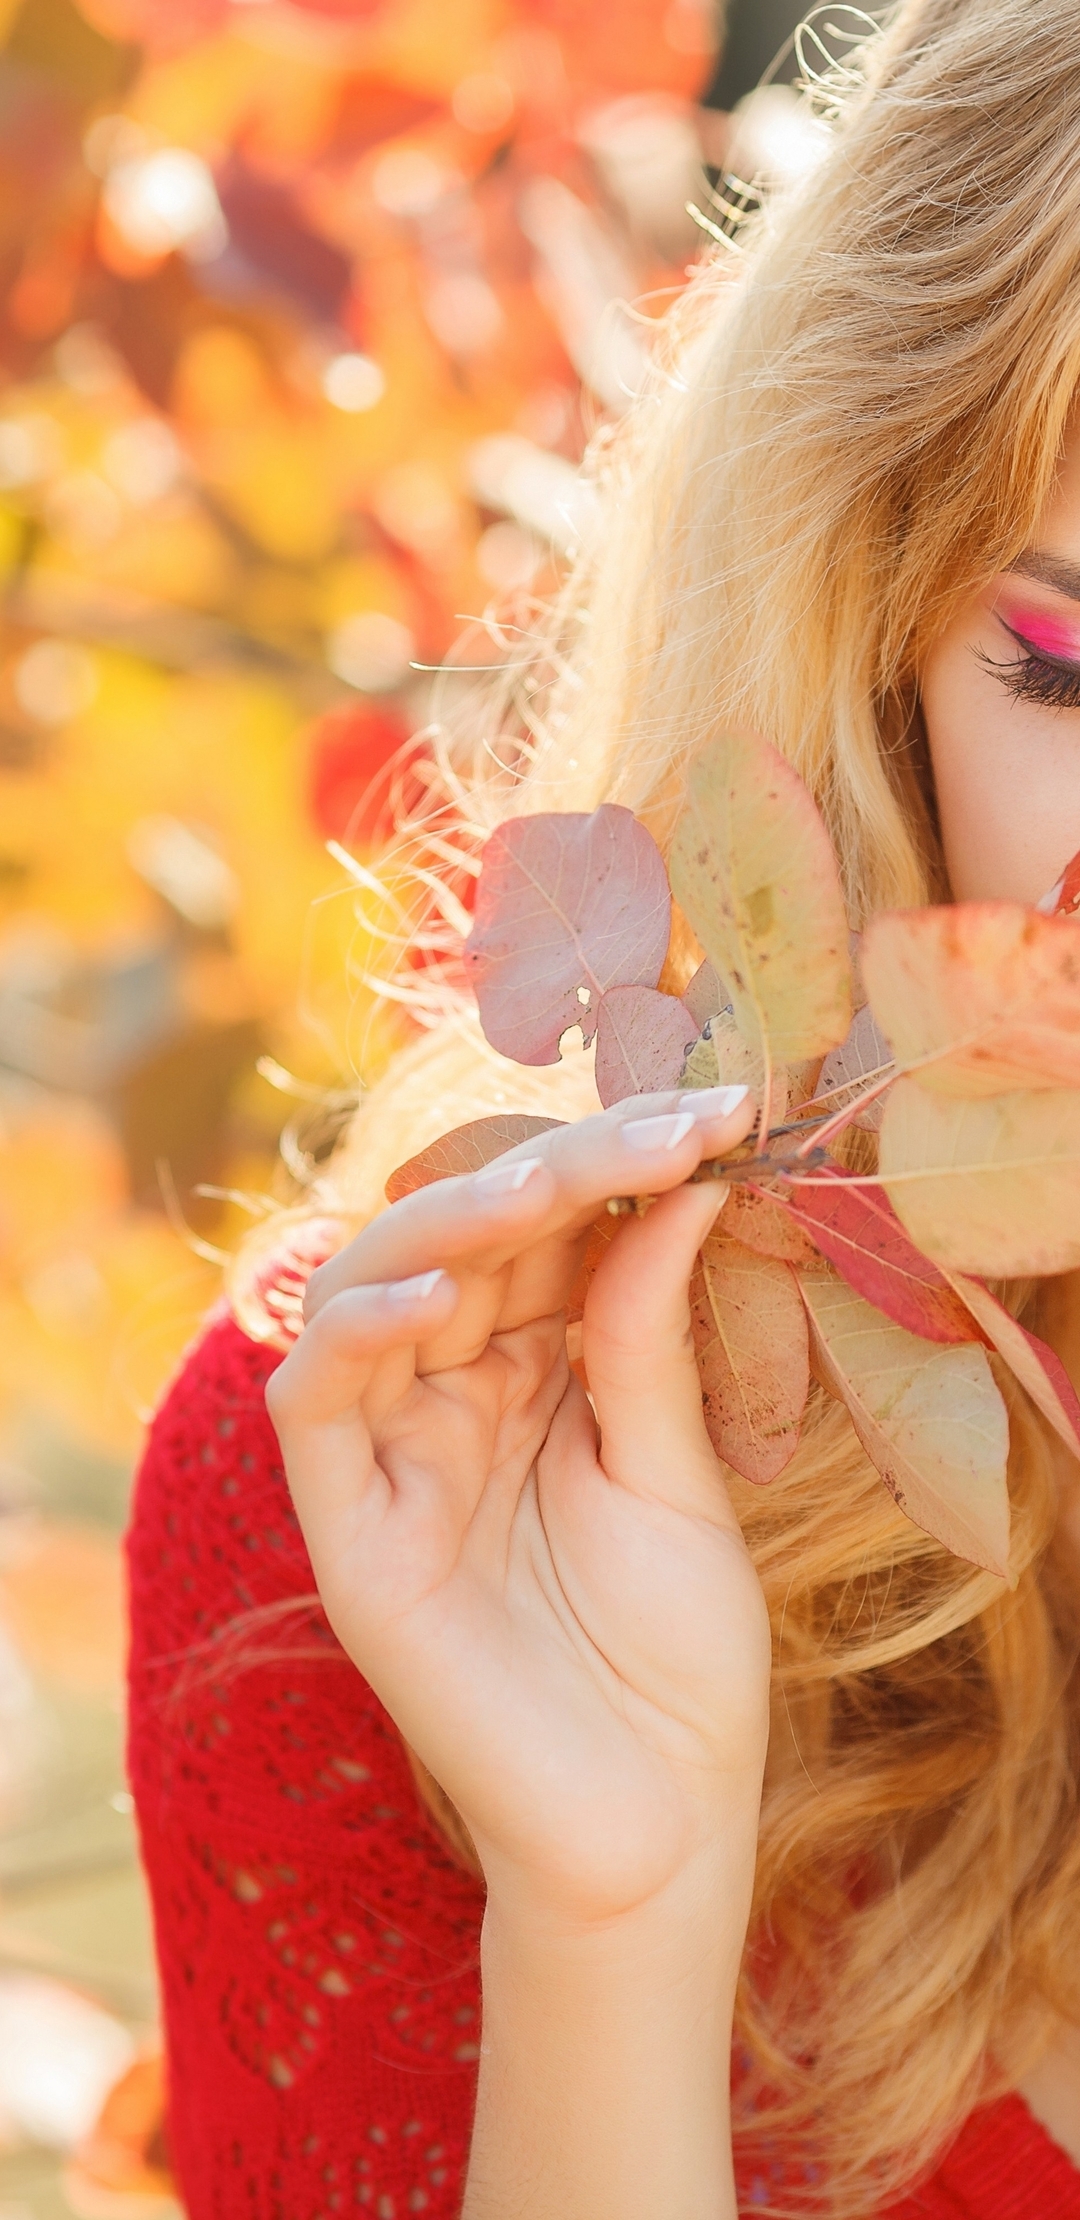 Картинка: Девушка, блондинка, макияж, ресницы, лицо, осень, листва